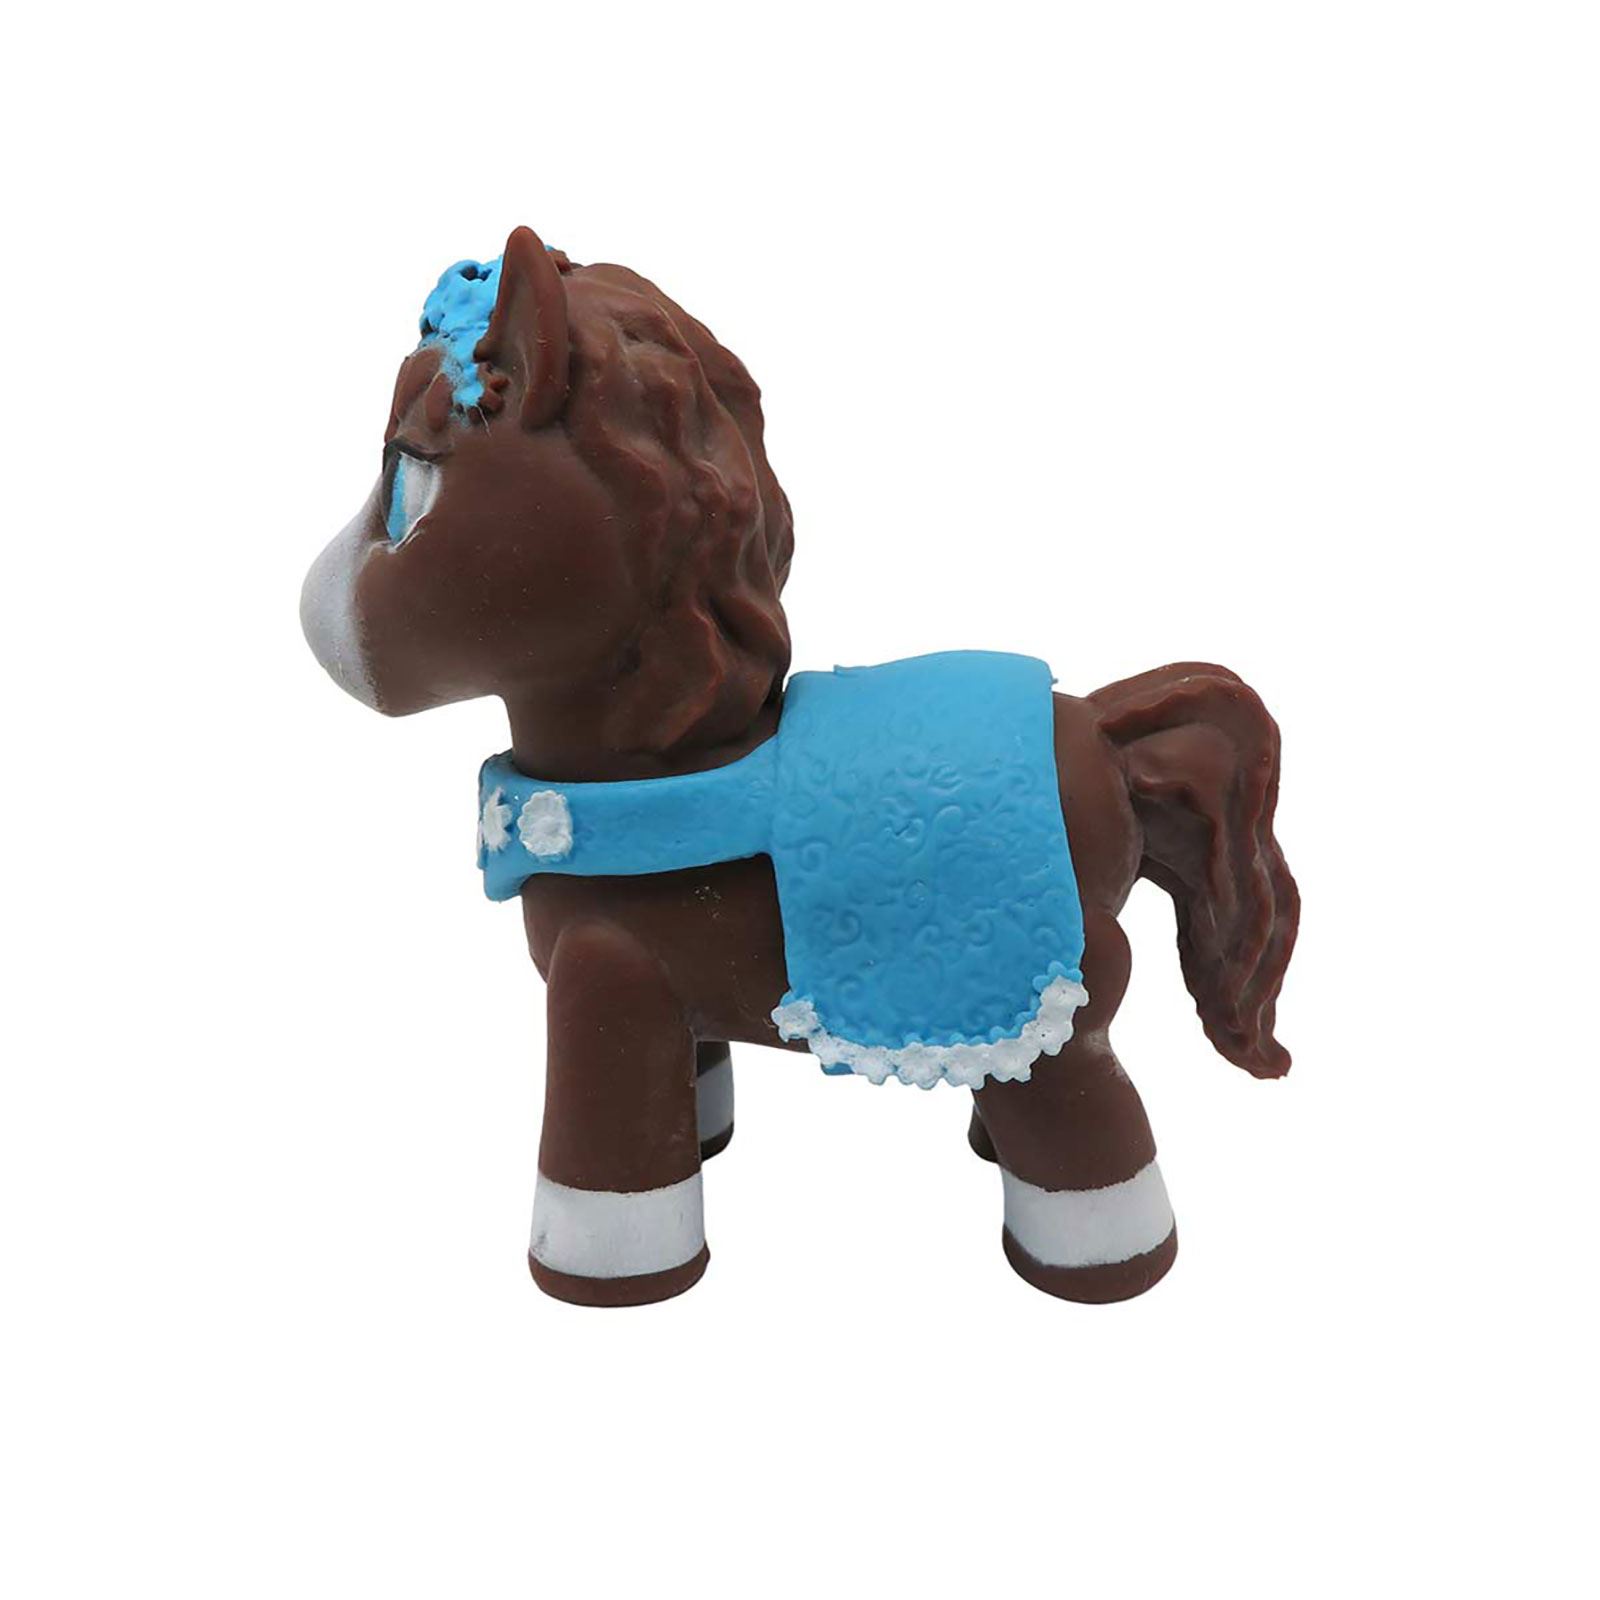 Sunman Oyuncak Diramix Dress Your Pony Kostümlü Figürler - Candy Mavi